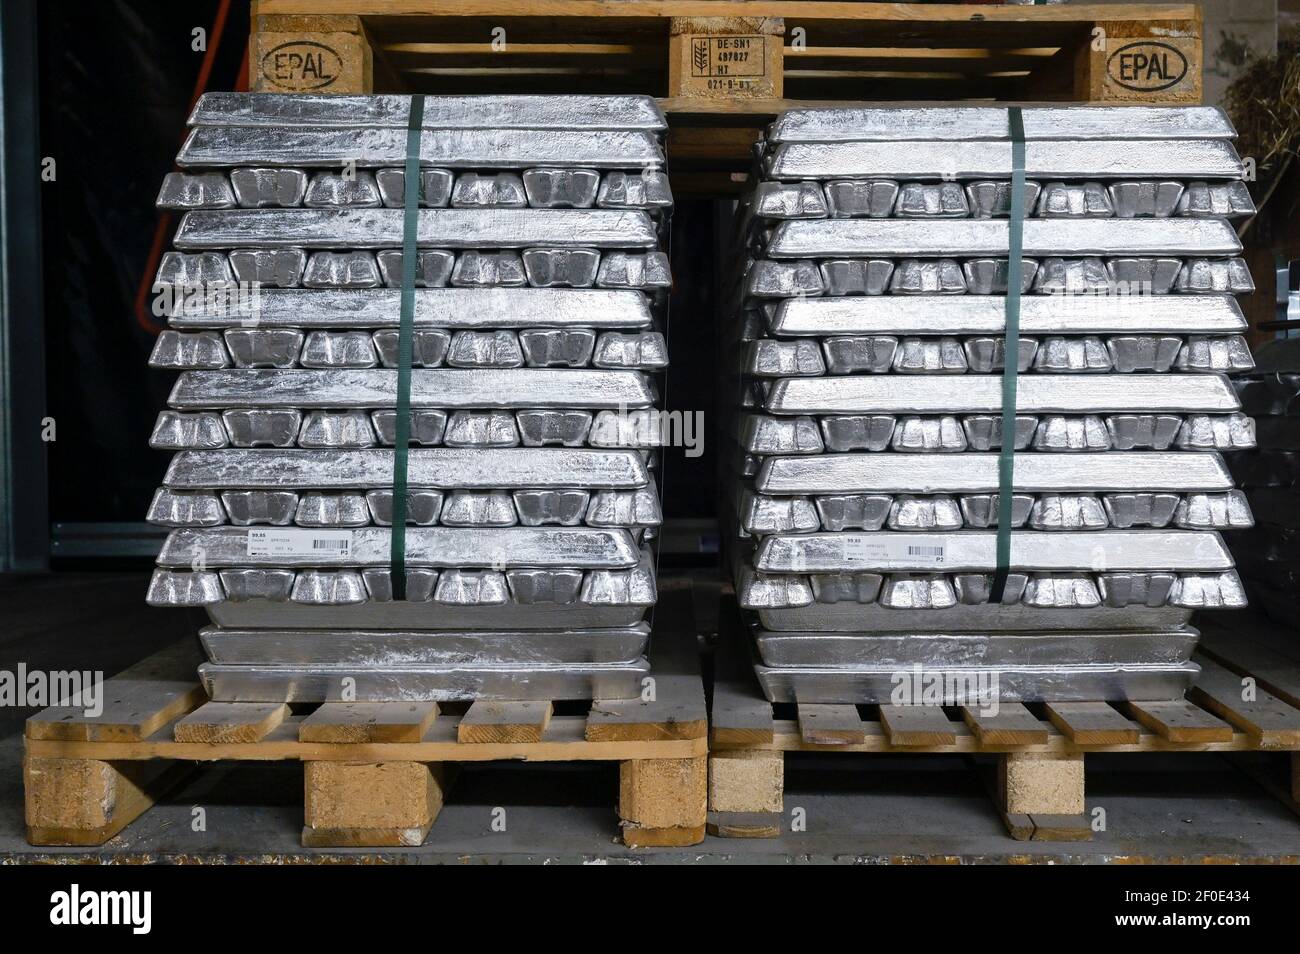 ALLEMAGNE, Hambourg, petite fonderie de métaux, barres d'aluminium empilées / DEUTSCHLAND, Gießerei, aluminium Barren im Lager Banque D'Images